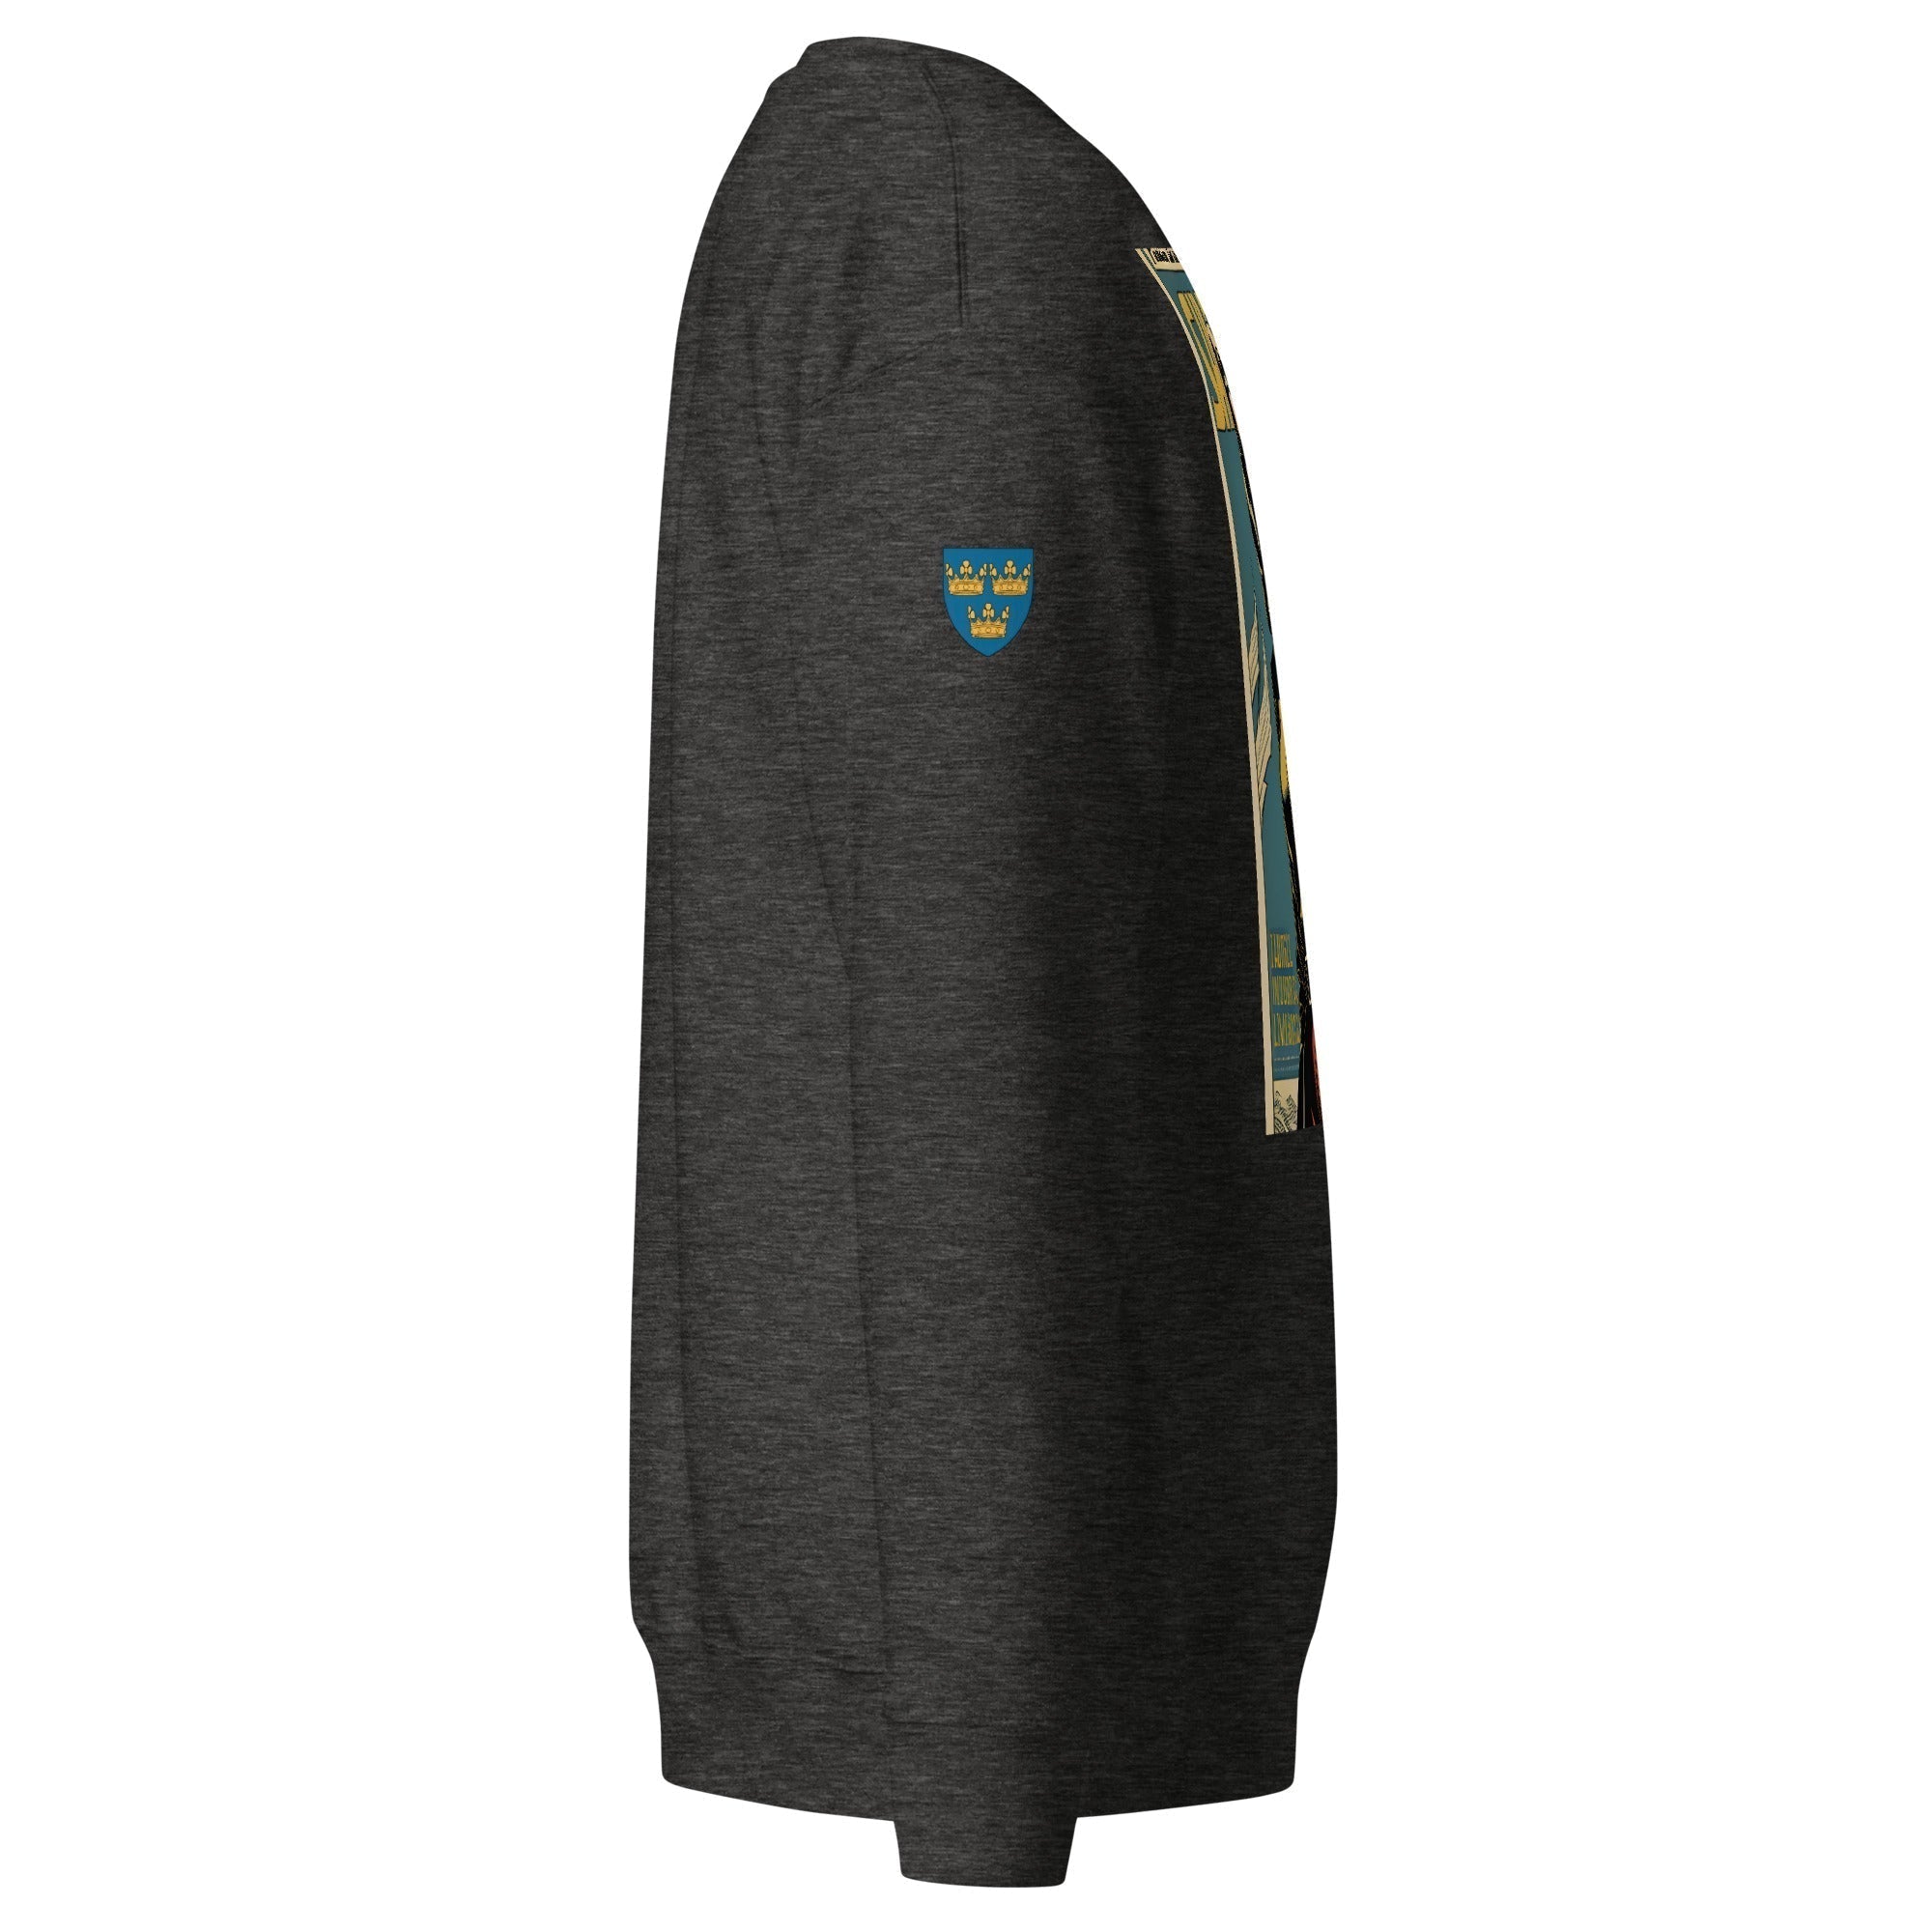 Unisex Premium Sweatshirt - Swedish Vintage Fashion Series v.50 - GRAPHIC T-SHIRTS